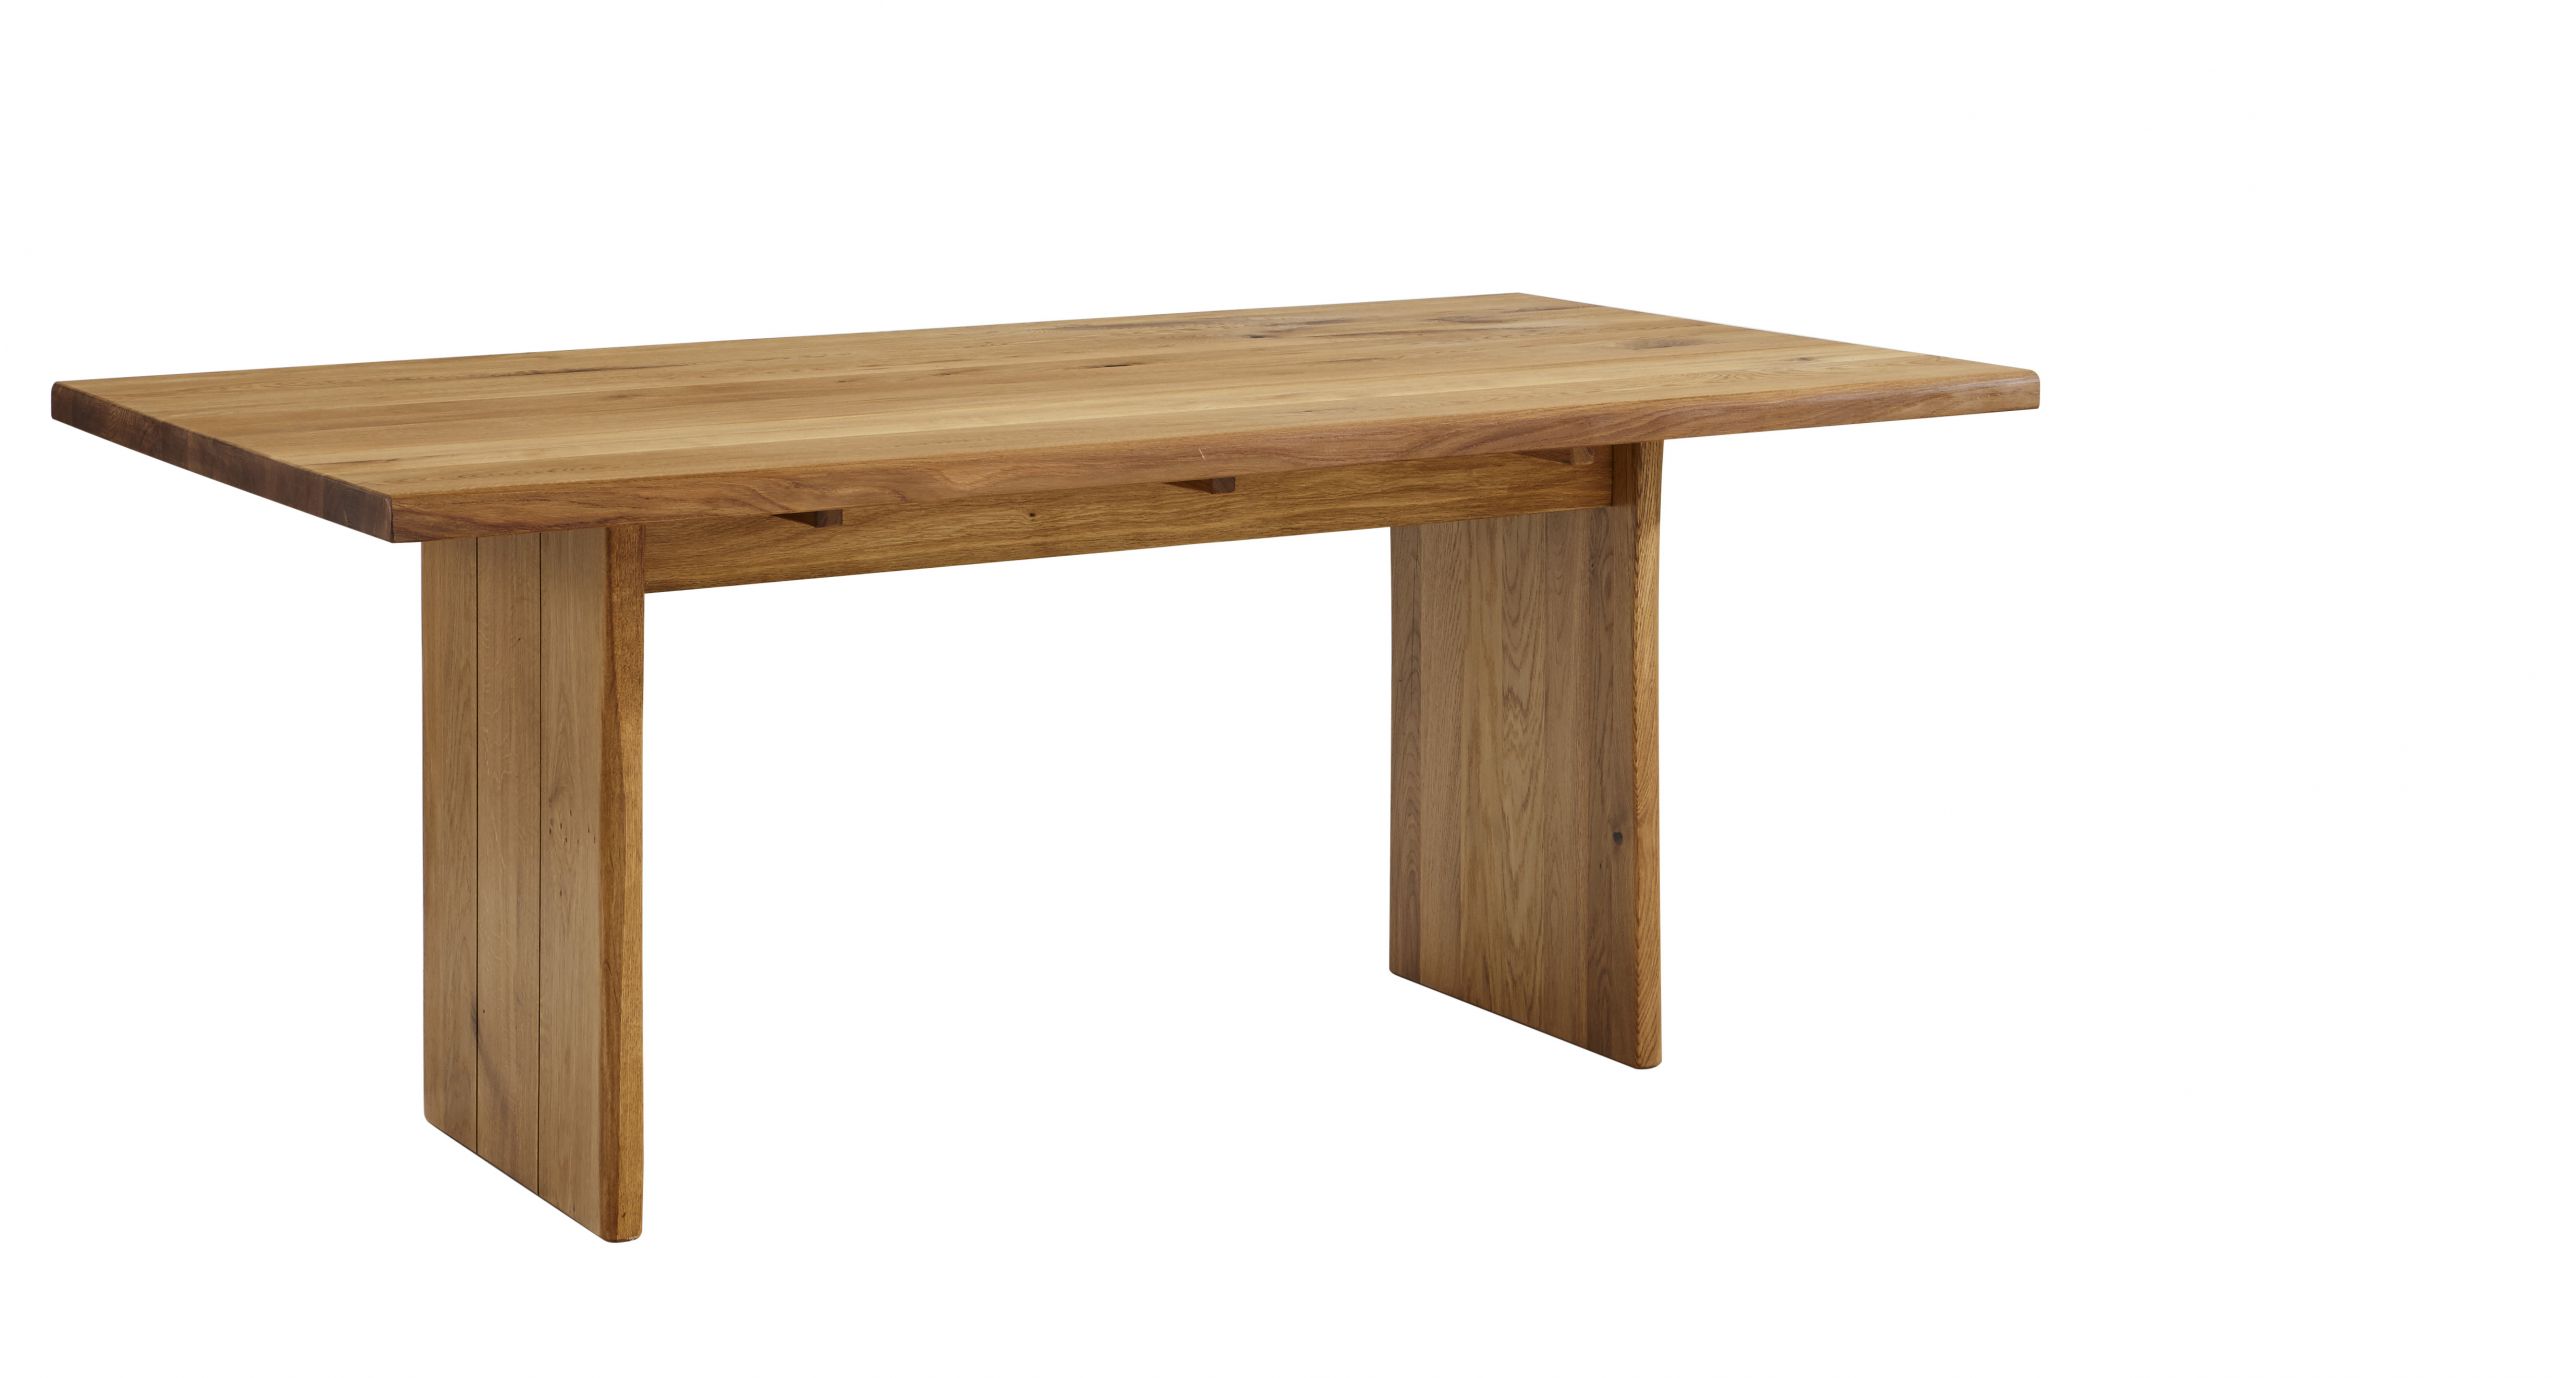 Esstisch Wisconsin – Tisch verlängerbar, LB ca. 100×180 cm, Wildeiche massiv